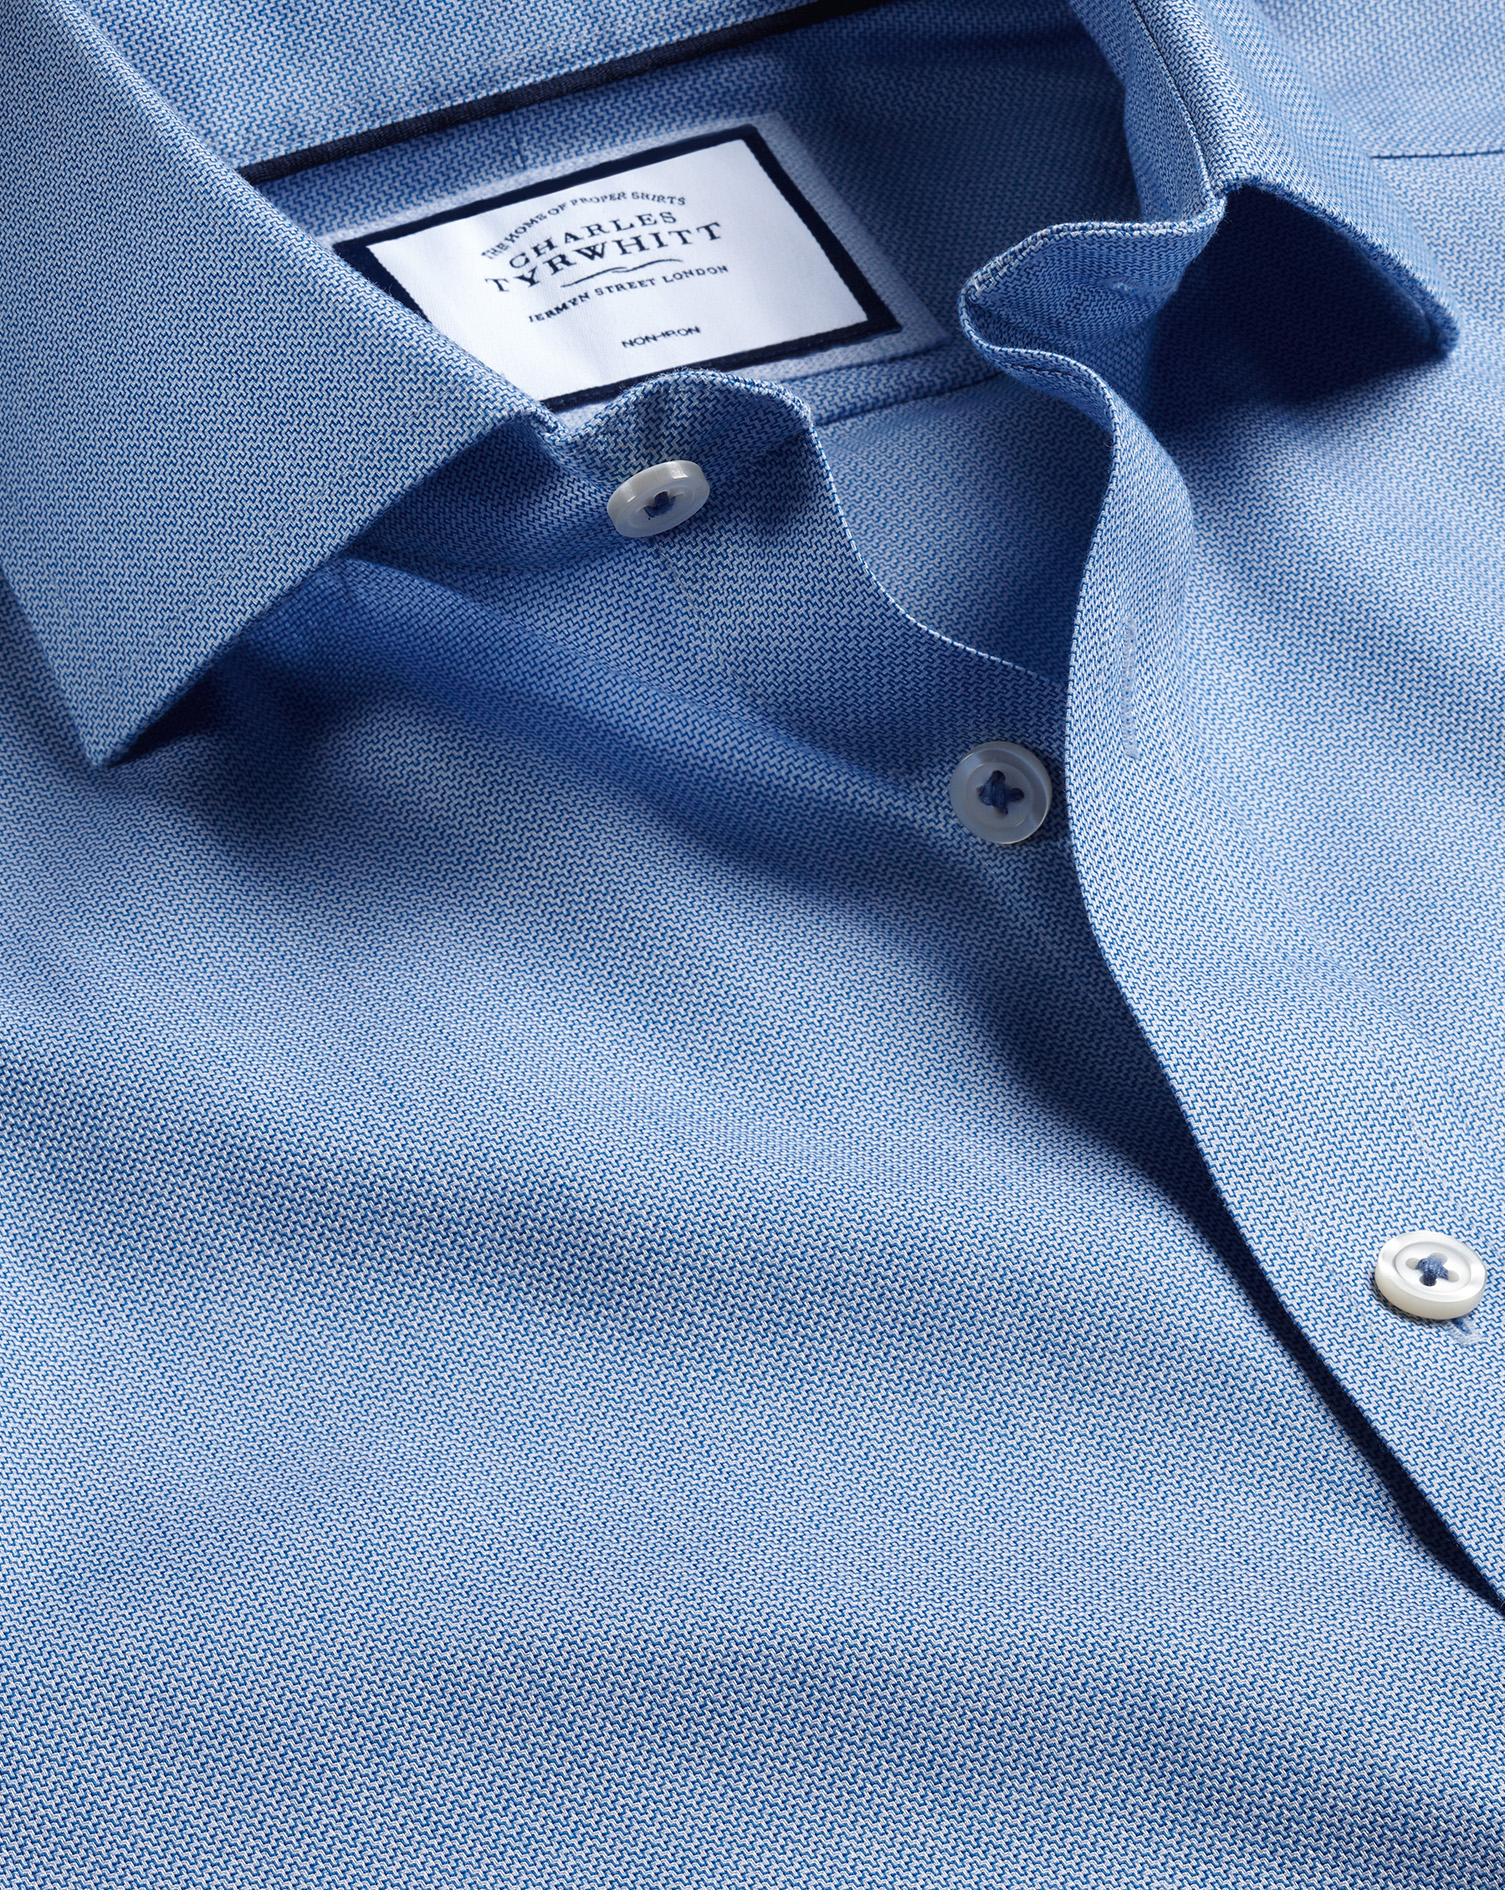 Men's Charles Tyrwhitt Cutaway Collar Non-Iron Henley Weave Dress Shirt - Ocean Blue French Cuff Siz